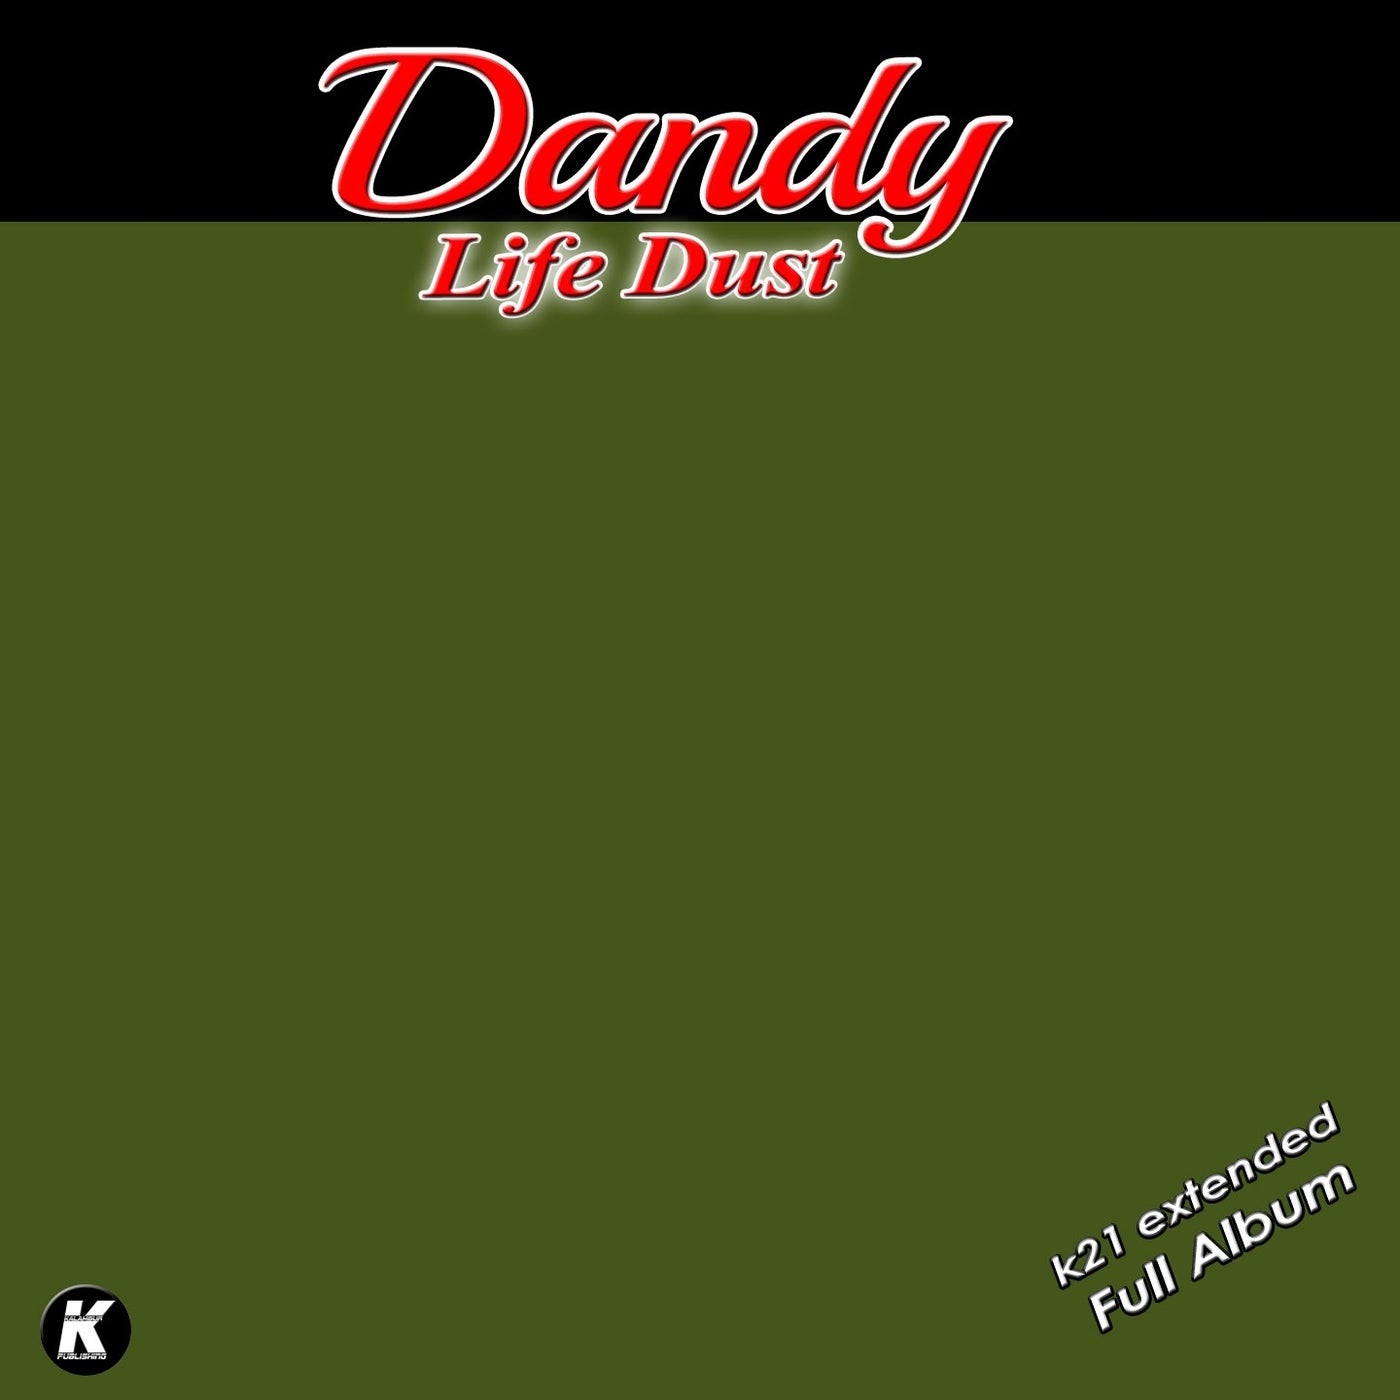 Dandy - Life Dust K21 Extended Full Album